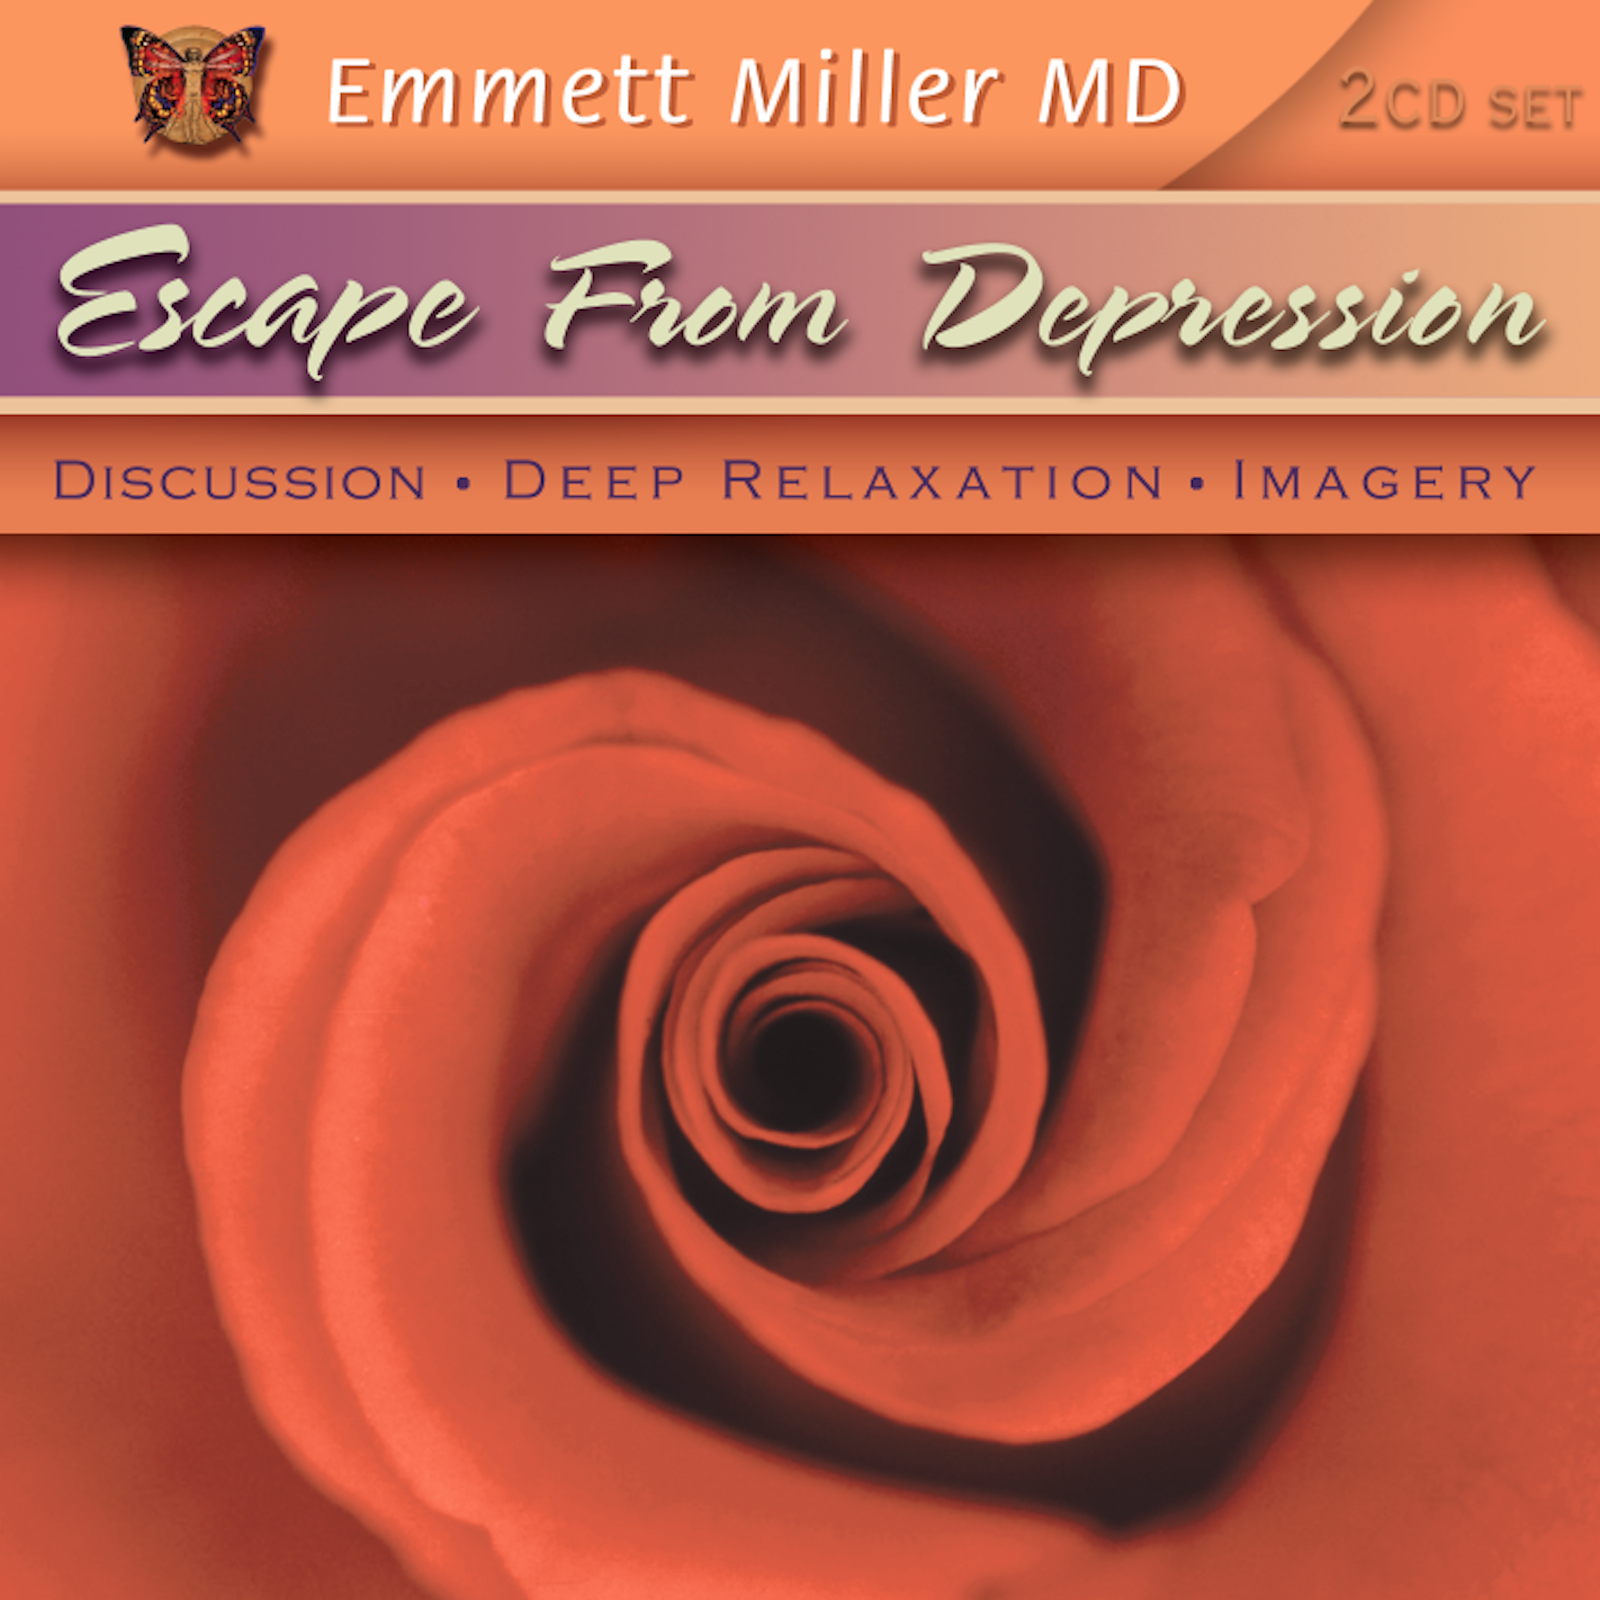 Escape from Depression with Dr. Emmett Miller Audio Program Dr. Emmett Miller - BetterListen!